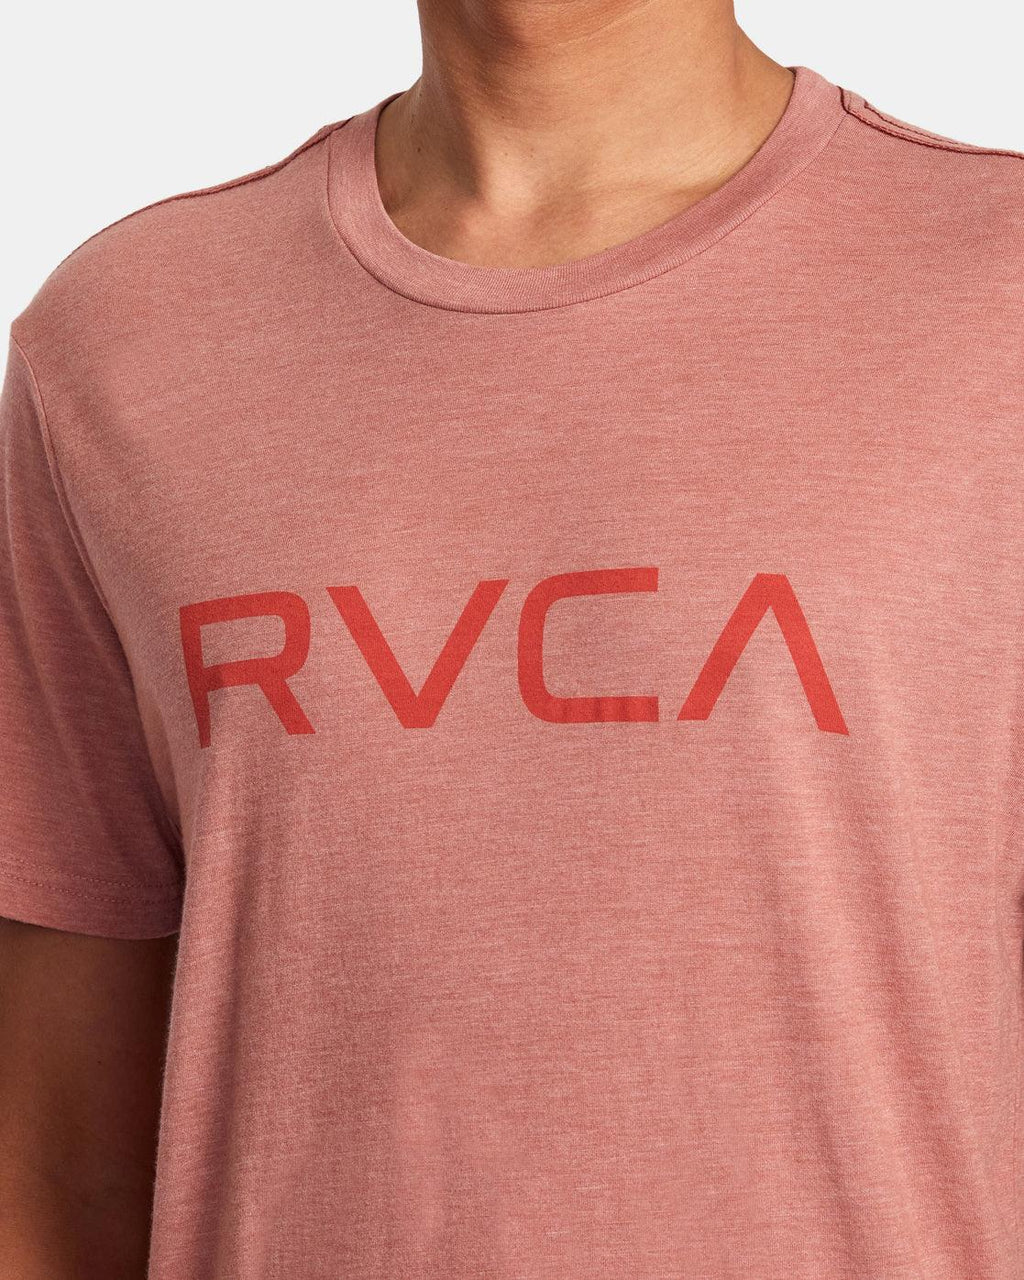 T-Shirt RVCA Big RCVA - Verde